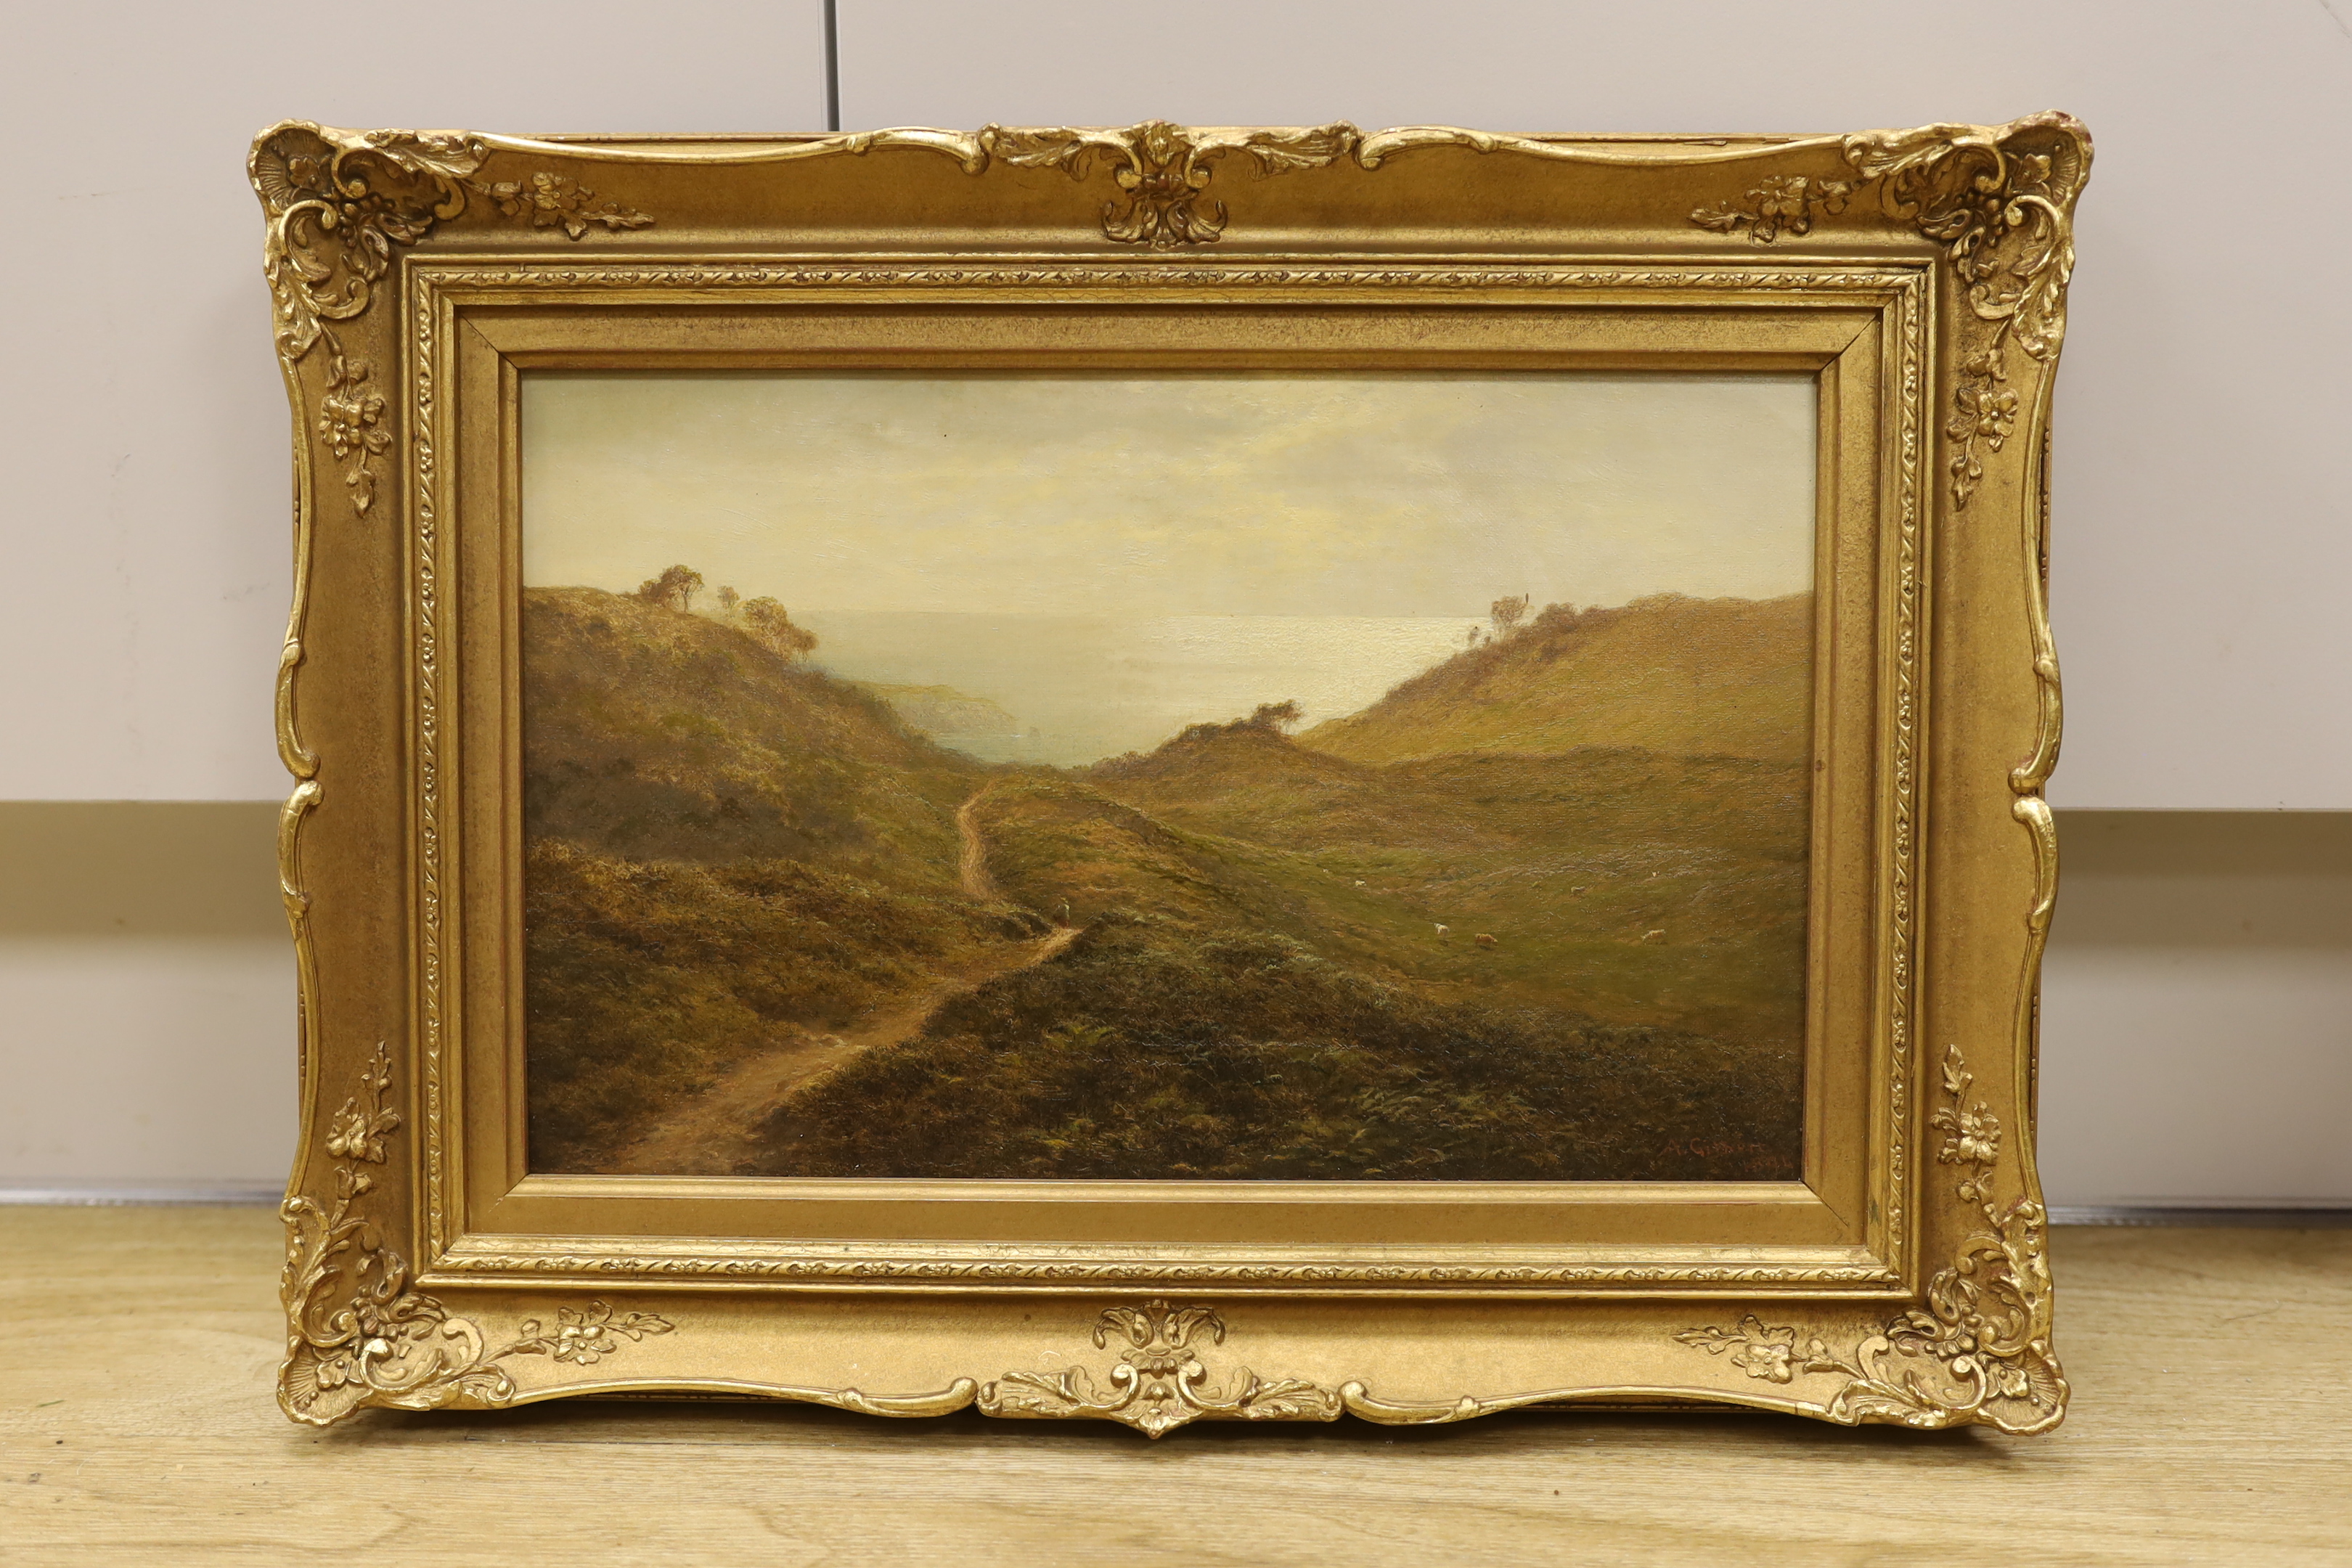 Arthur Gilbert (1819-1895), oil on canvas, Coastal landscape, signed and dated 1894, Windsor & Newton stamp verso, 21 x 34cm, ornate gilt framed